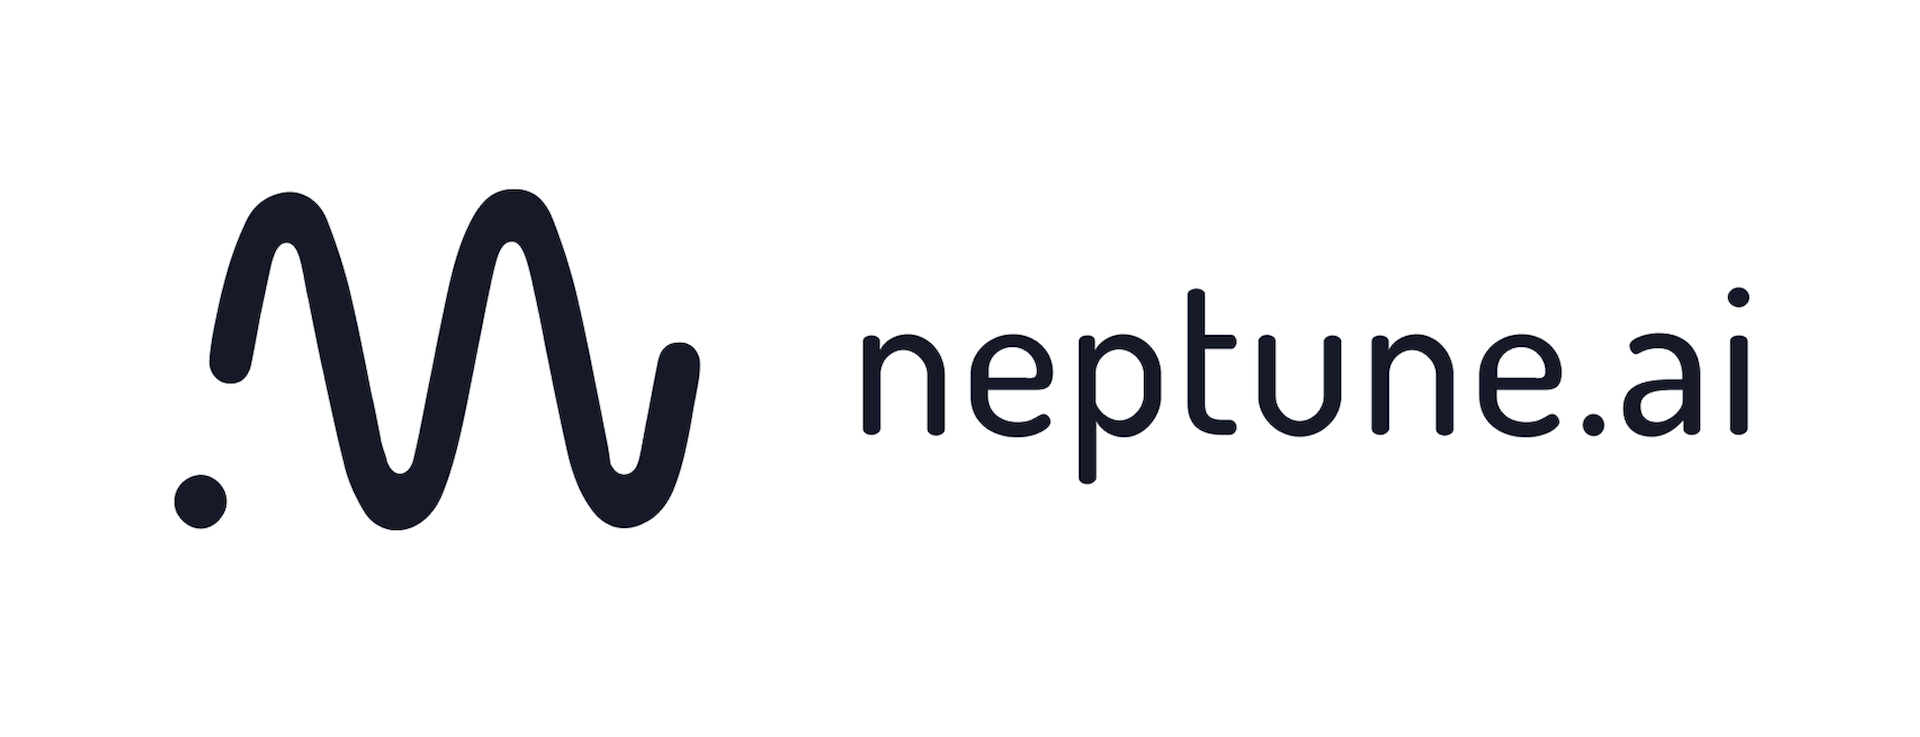 neptune.ai raises $8M to streamline ML model development